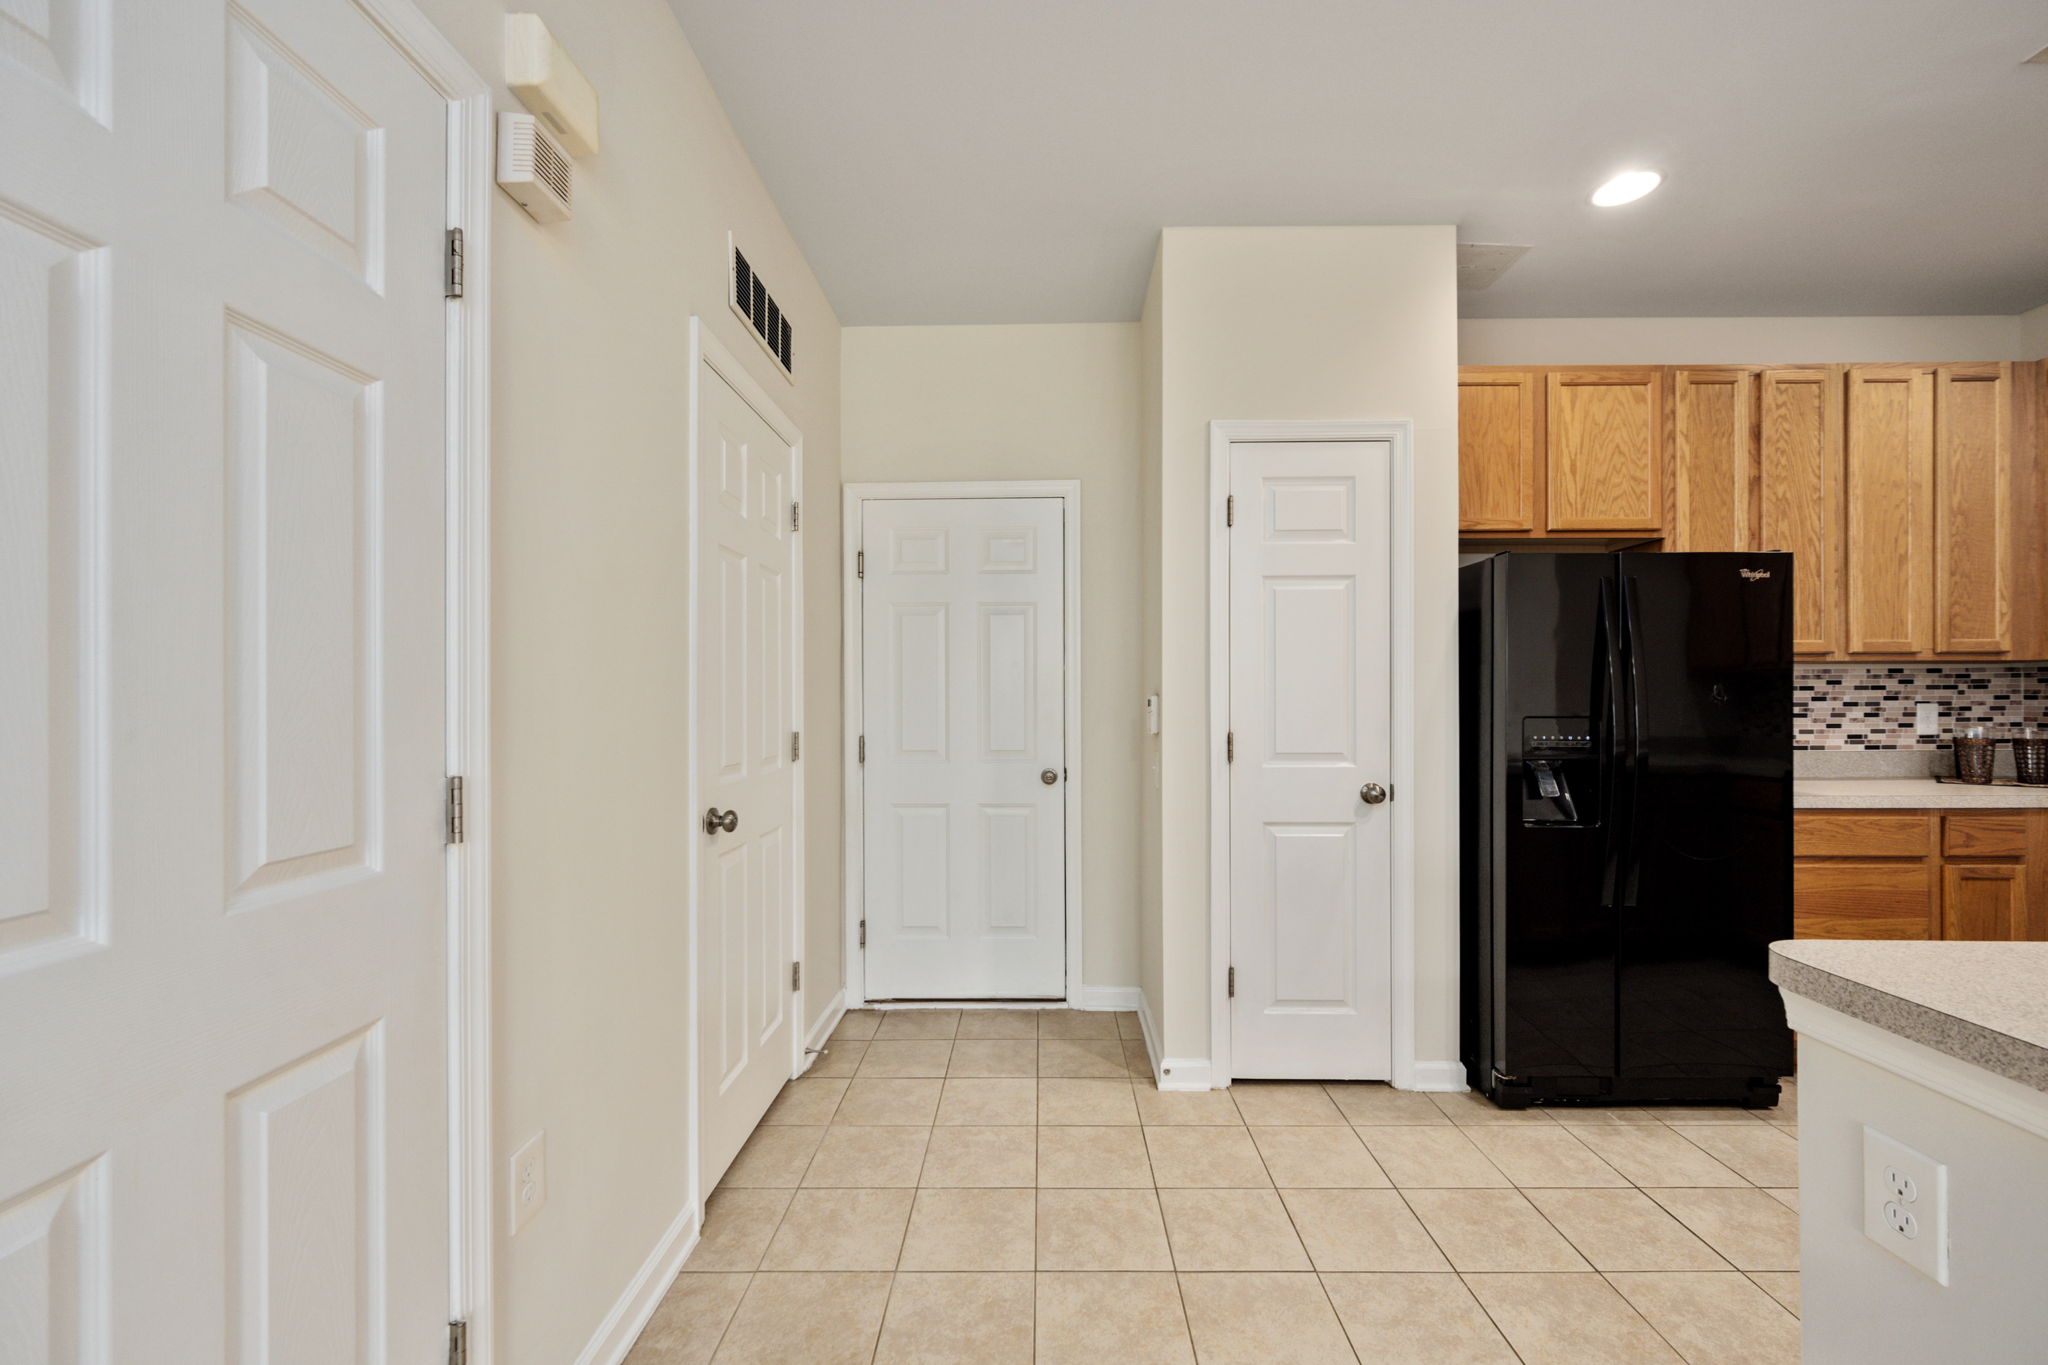 Kitchen pantry and door to garage